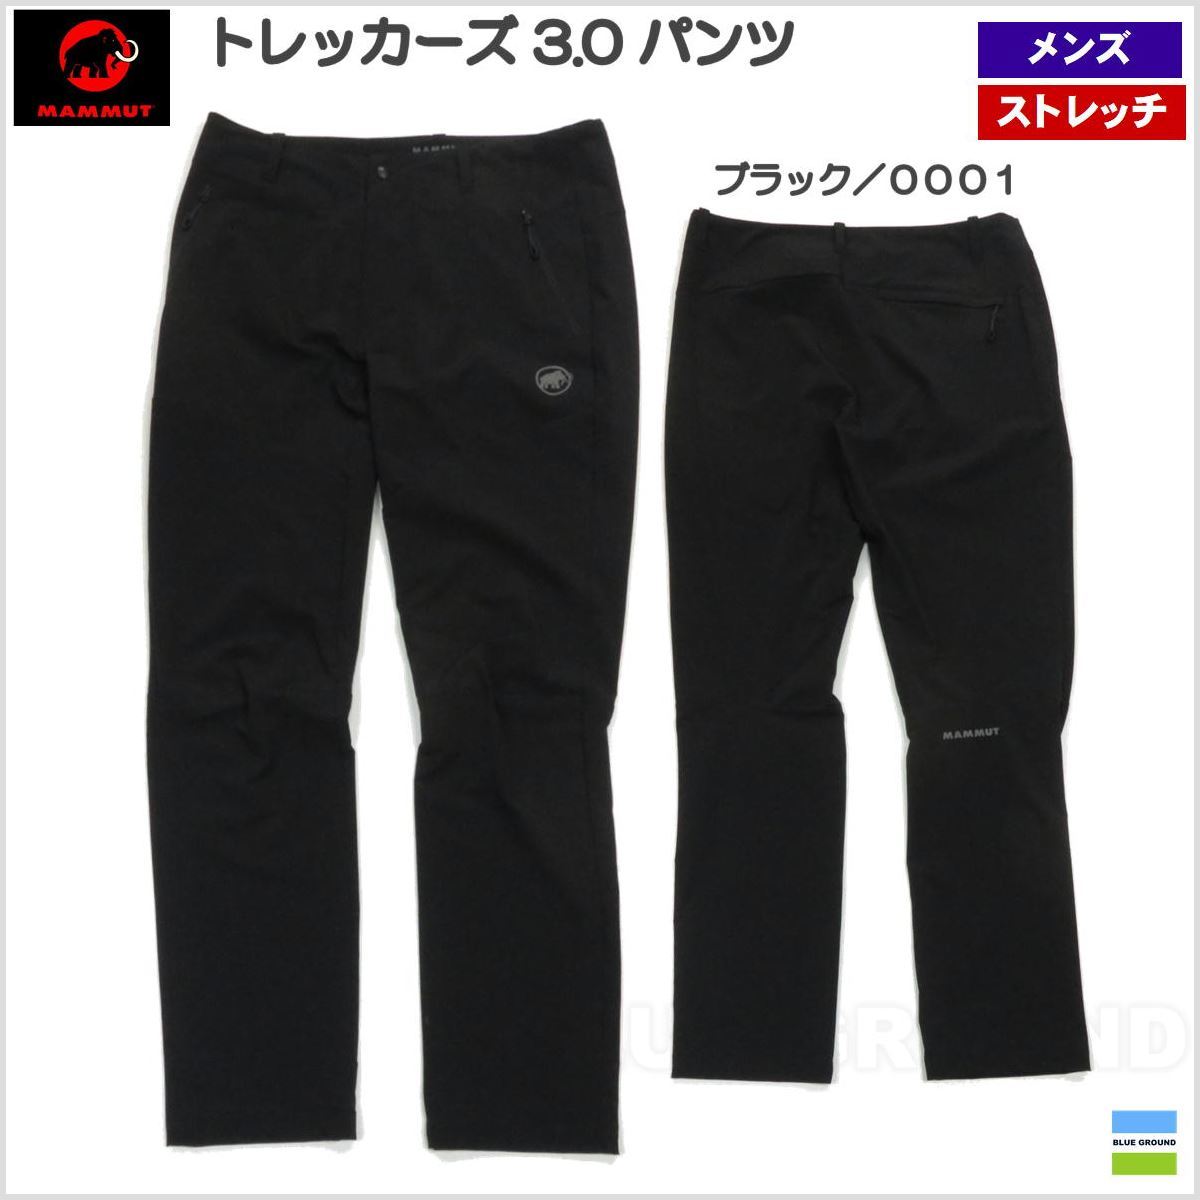 L(日本XL) マムート / トレッカーズ 3.0 SO パンツ メンズ ・ アウトドア ソフトシェル 登山 トレッキング 高機能 ブラック/0001L(日本XL)